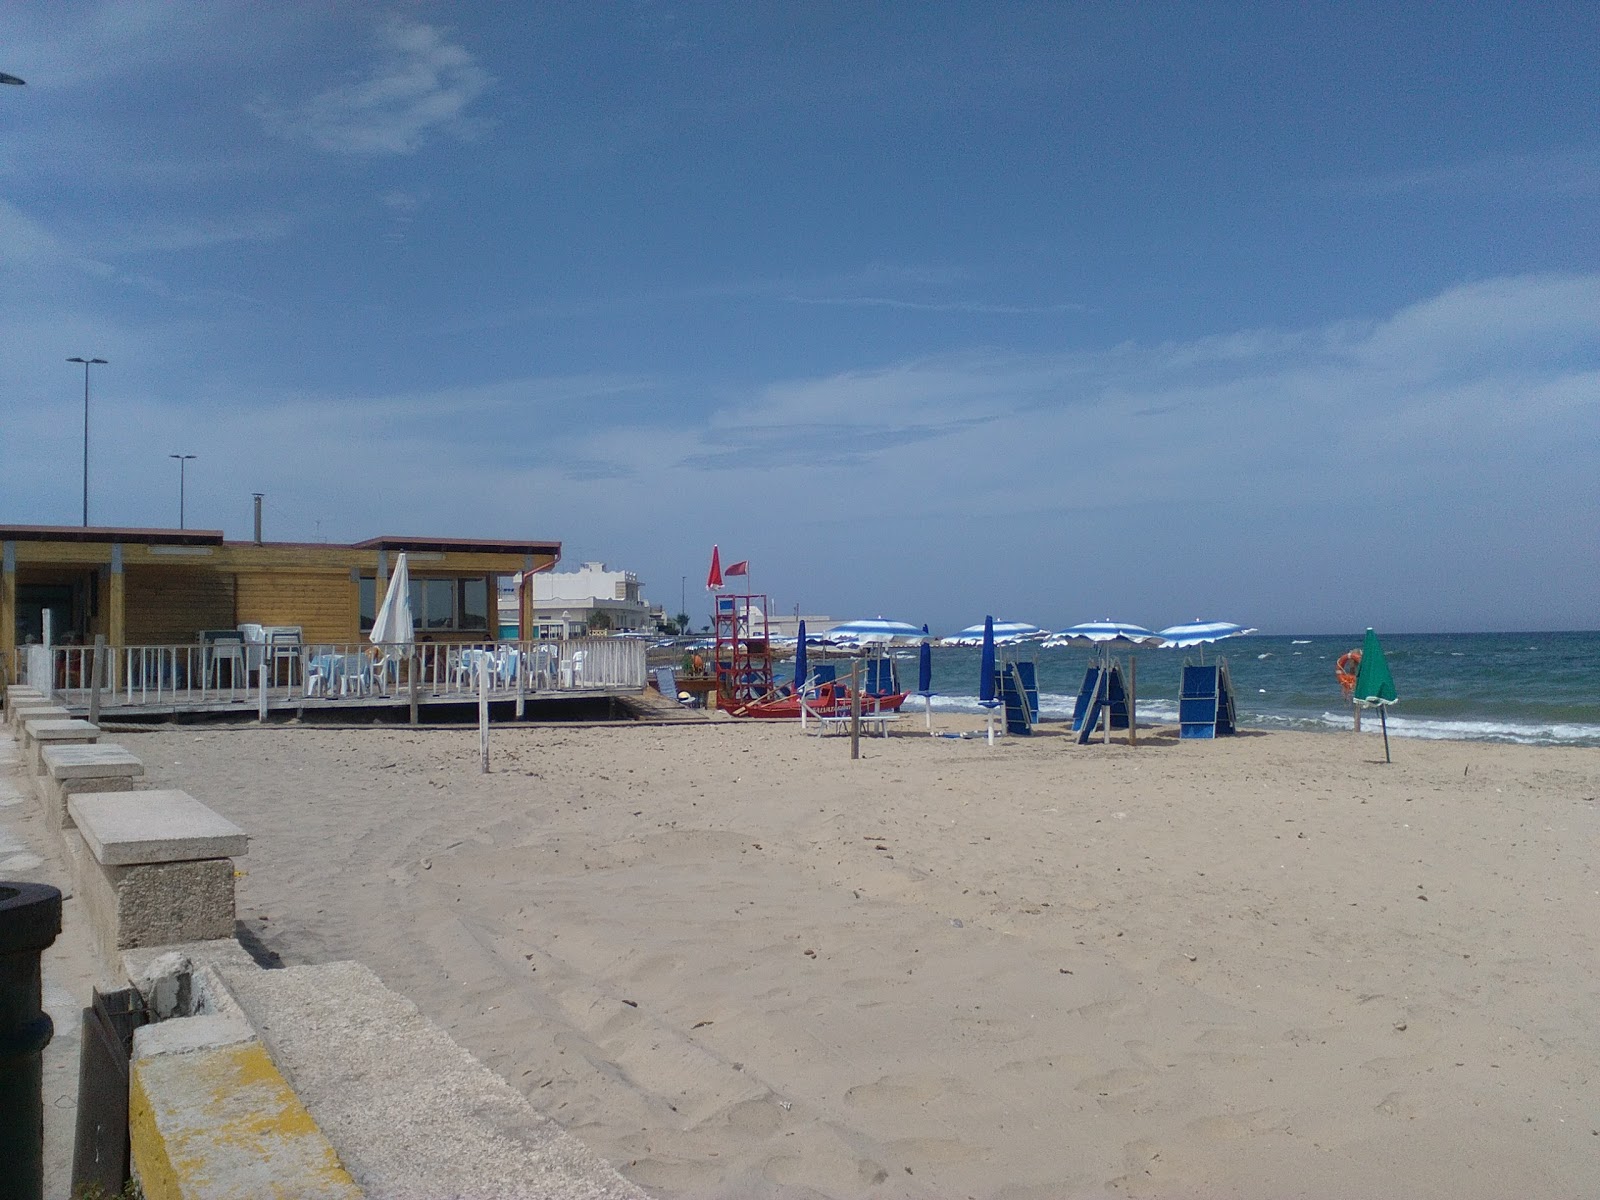 Fotografie cu Olindo's beach cu nivelul de curățenie in medie